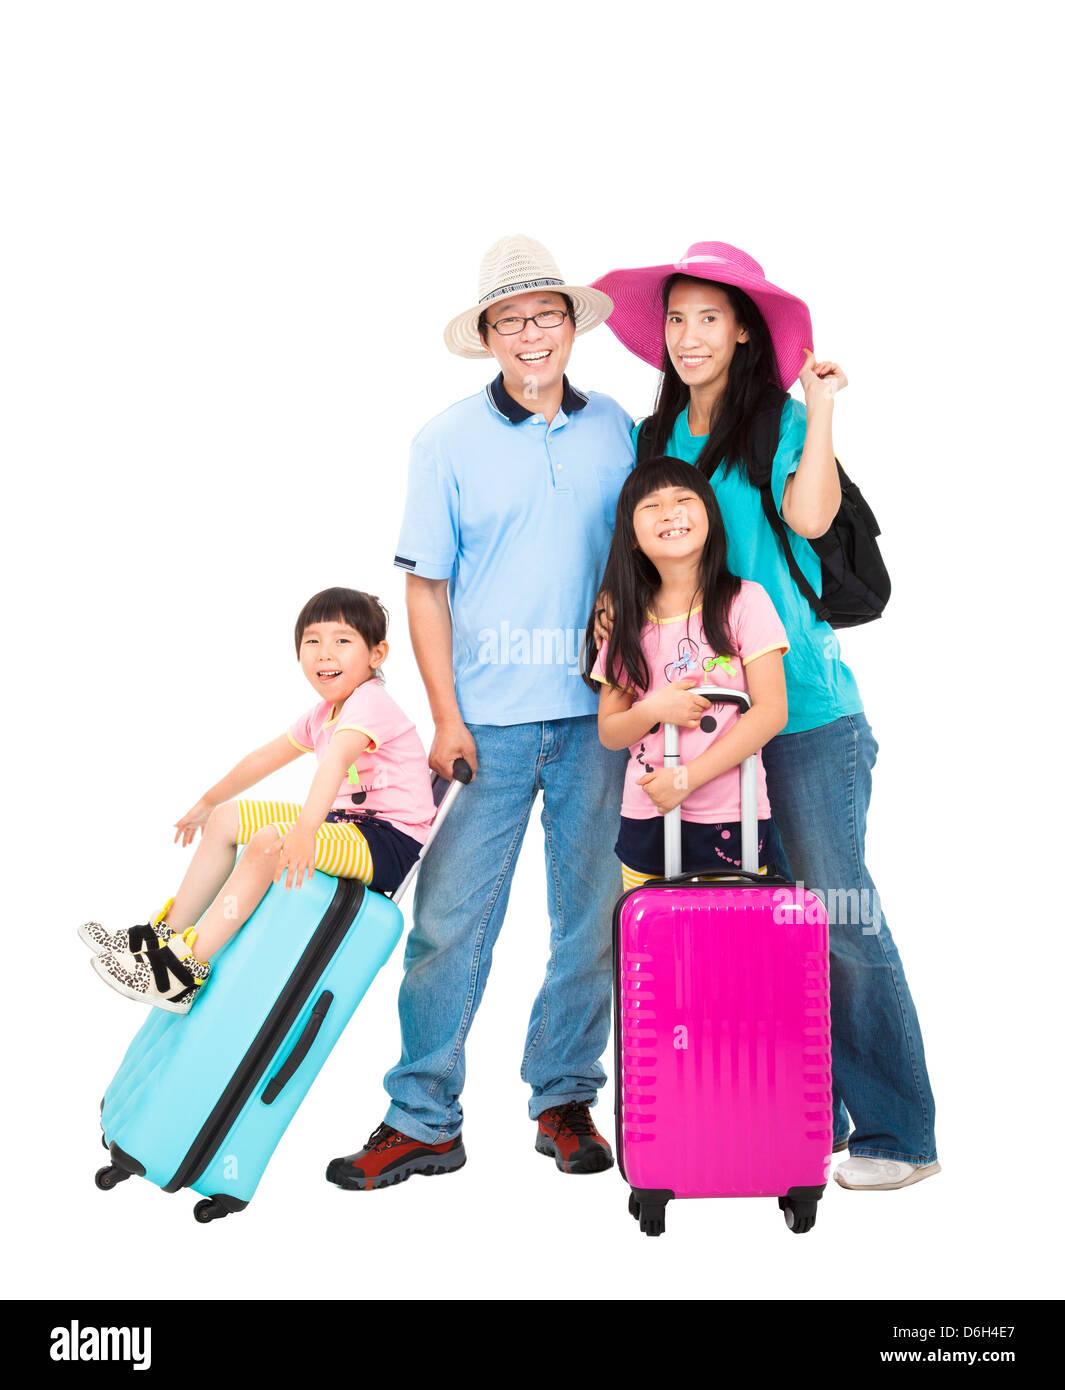 Famille heureuse avec valise prendre les vacances d'été Banque D'Images